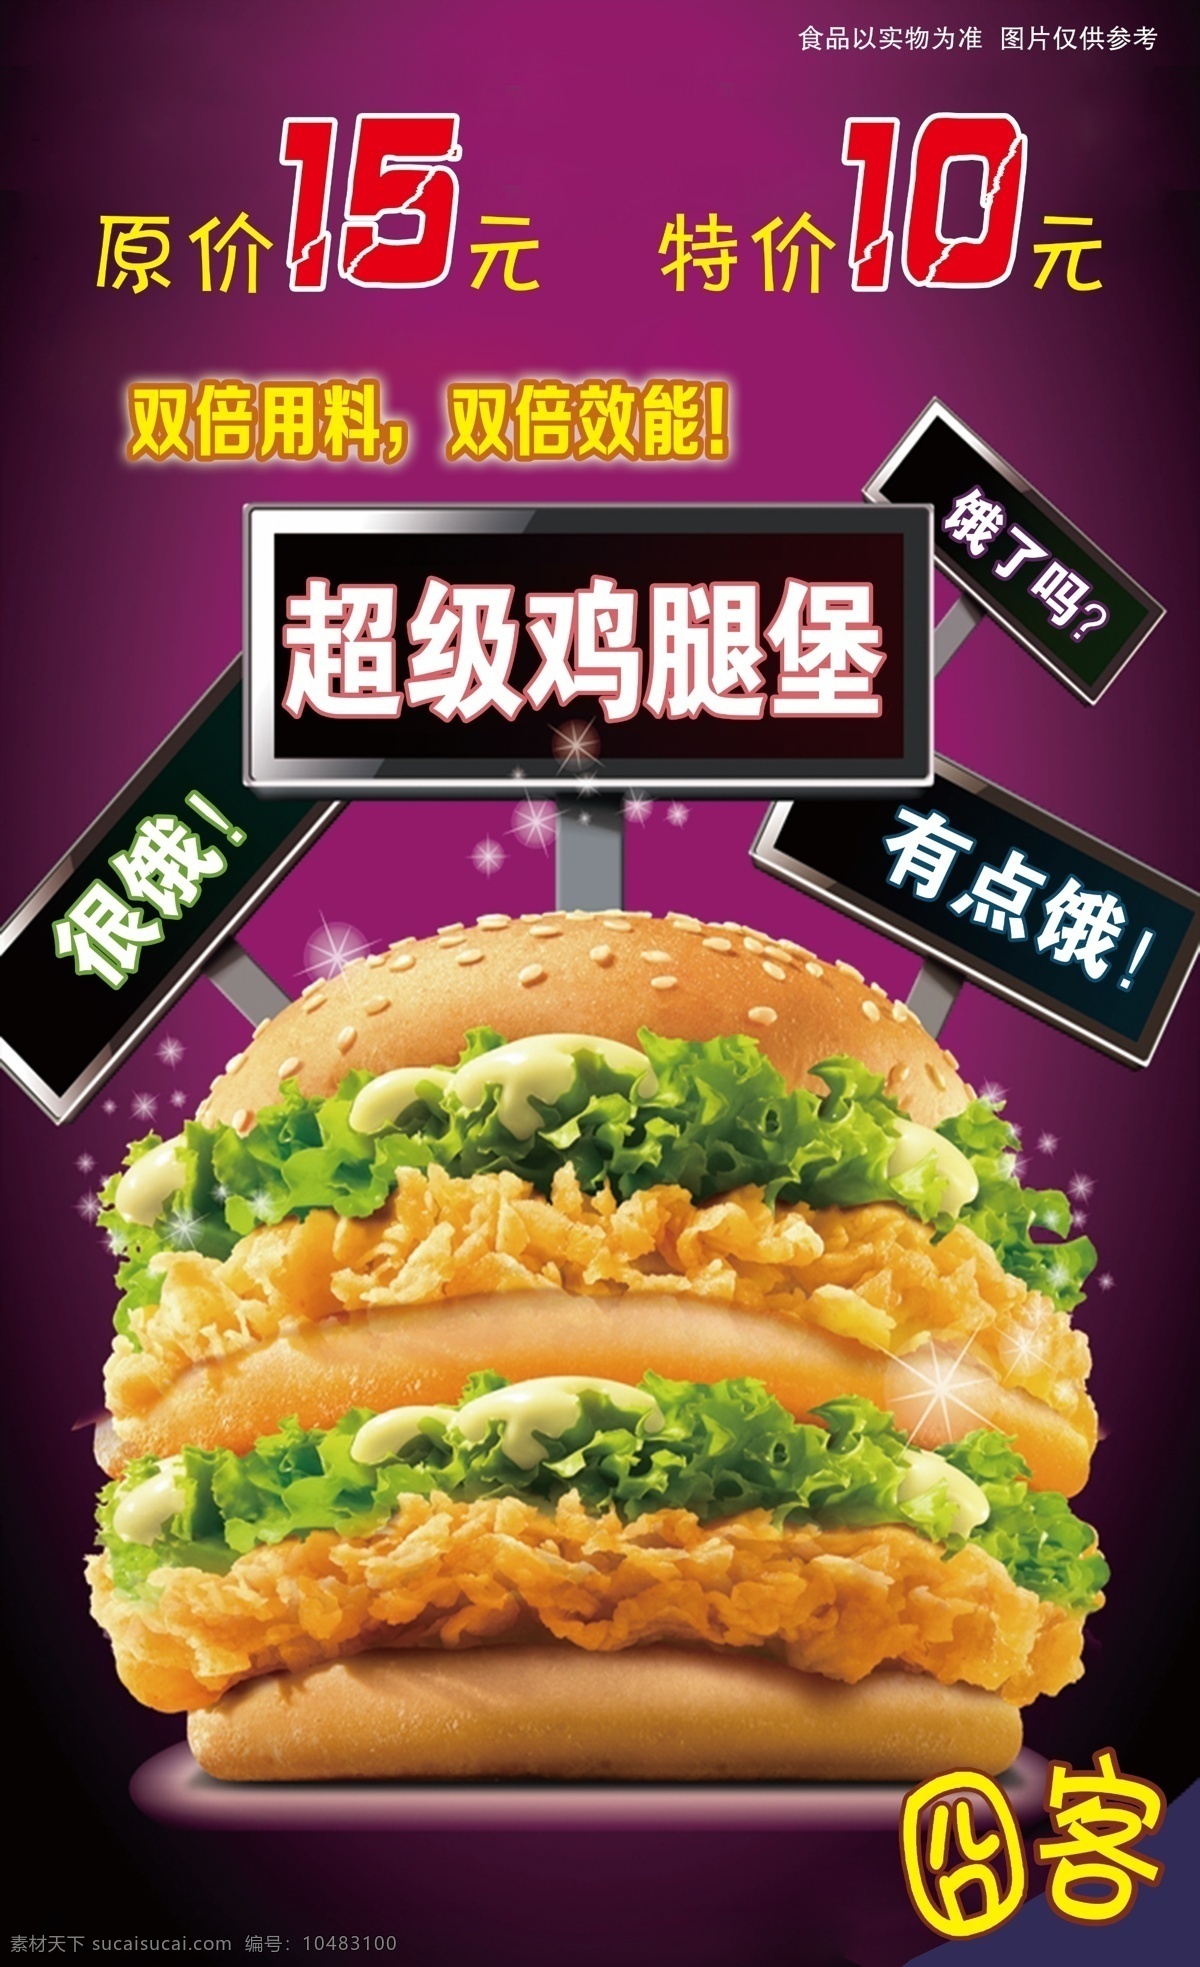 超级 汉堡 快餐 超级汉堡 超级鸡腿堡 海报 原创设计 原创海报